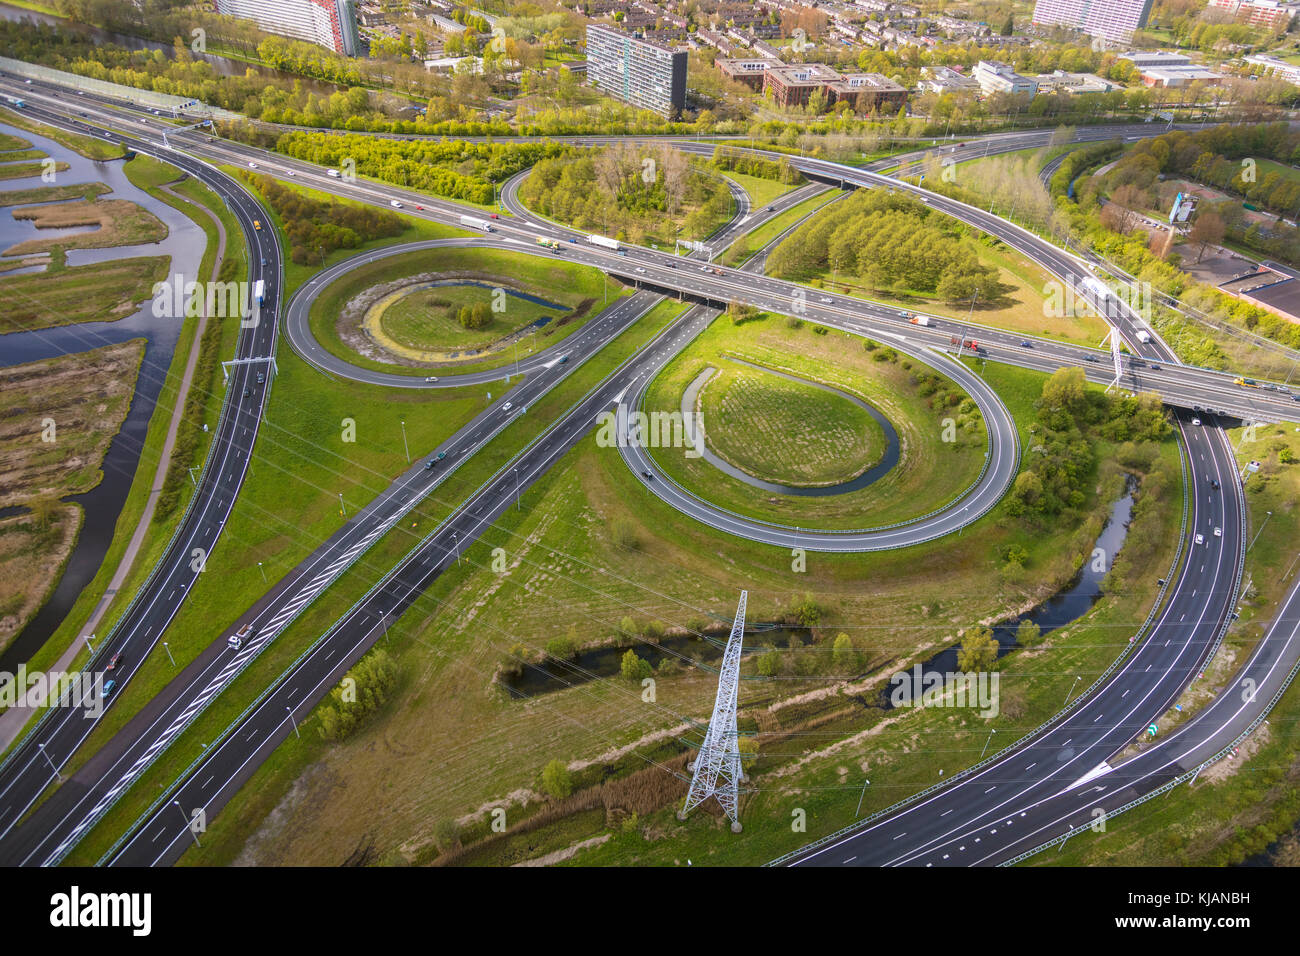 Vue aérienne de jonctions de route, près d'Amsterdam, Pays-Bas Banque D'Images